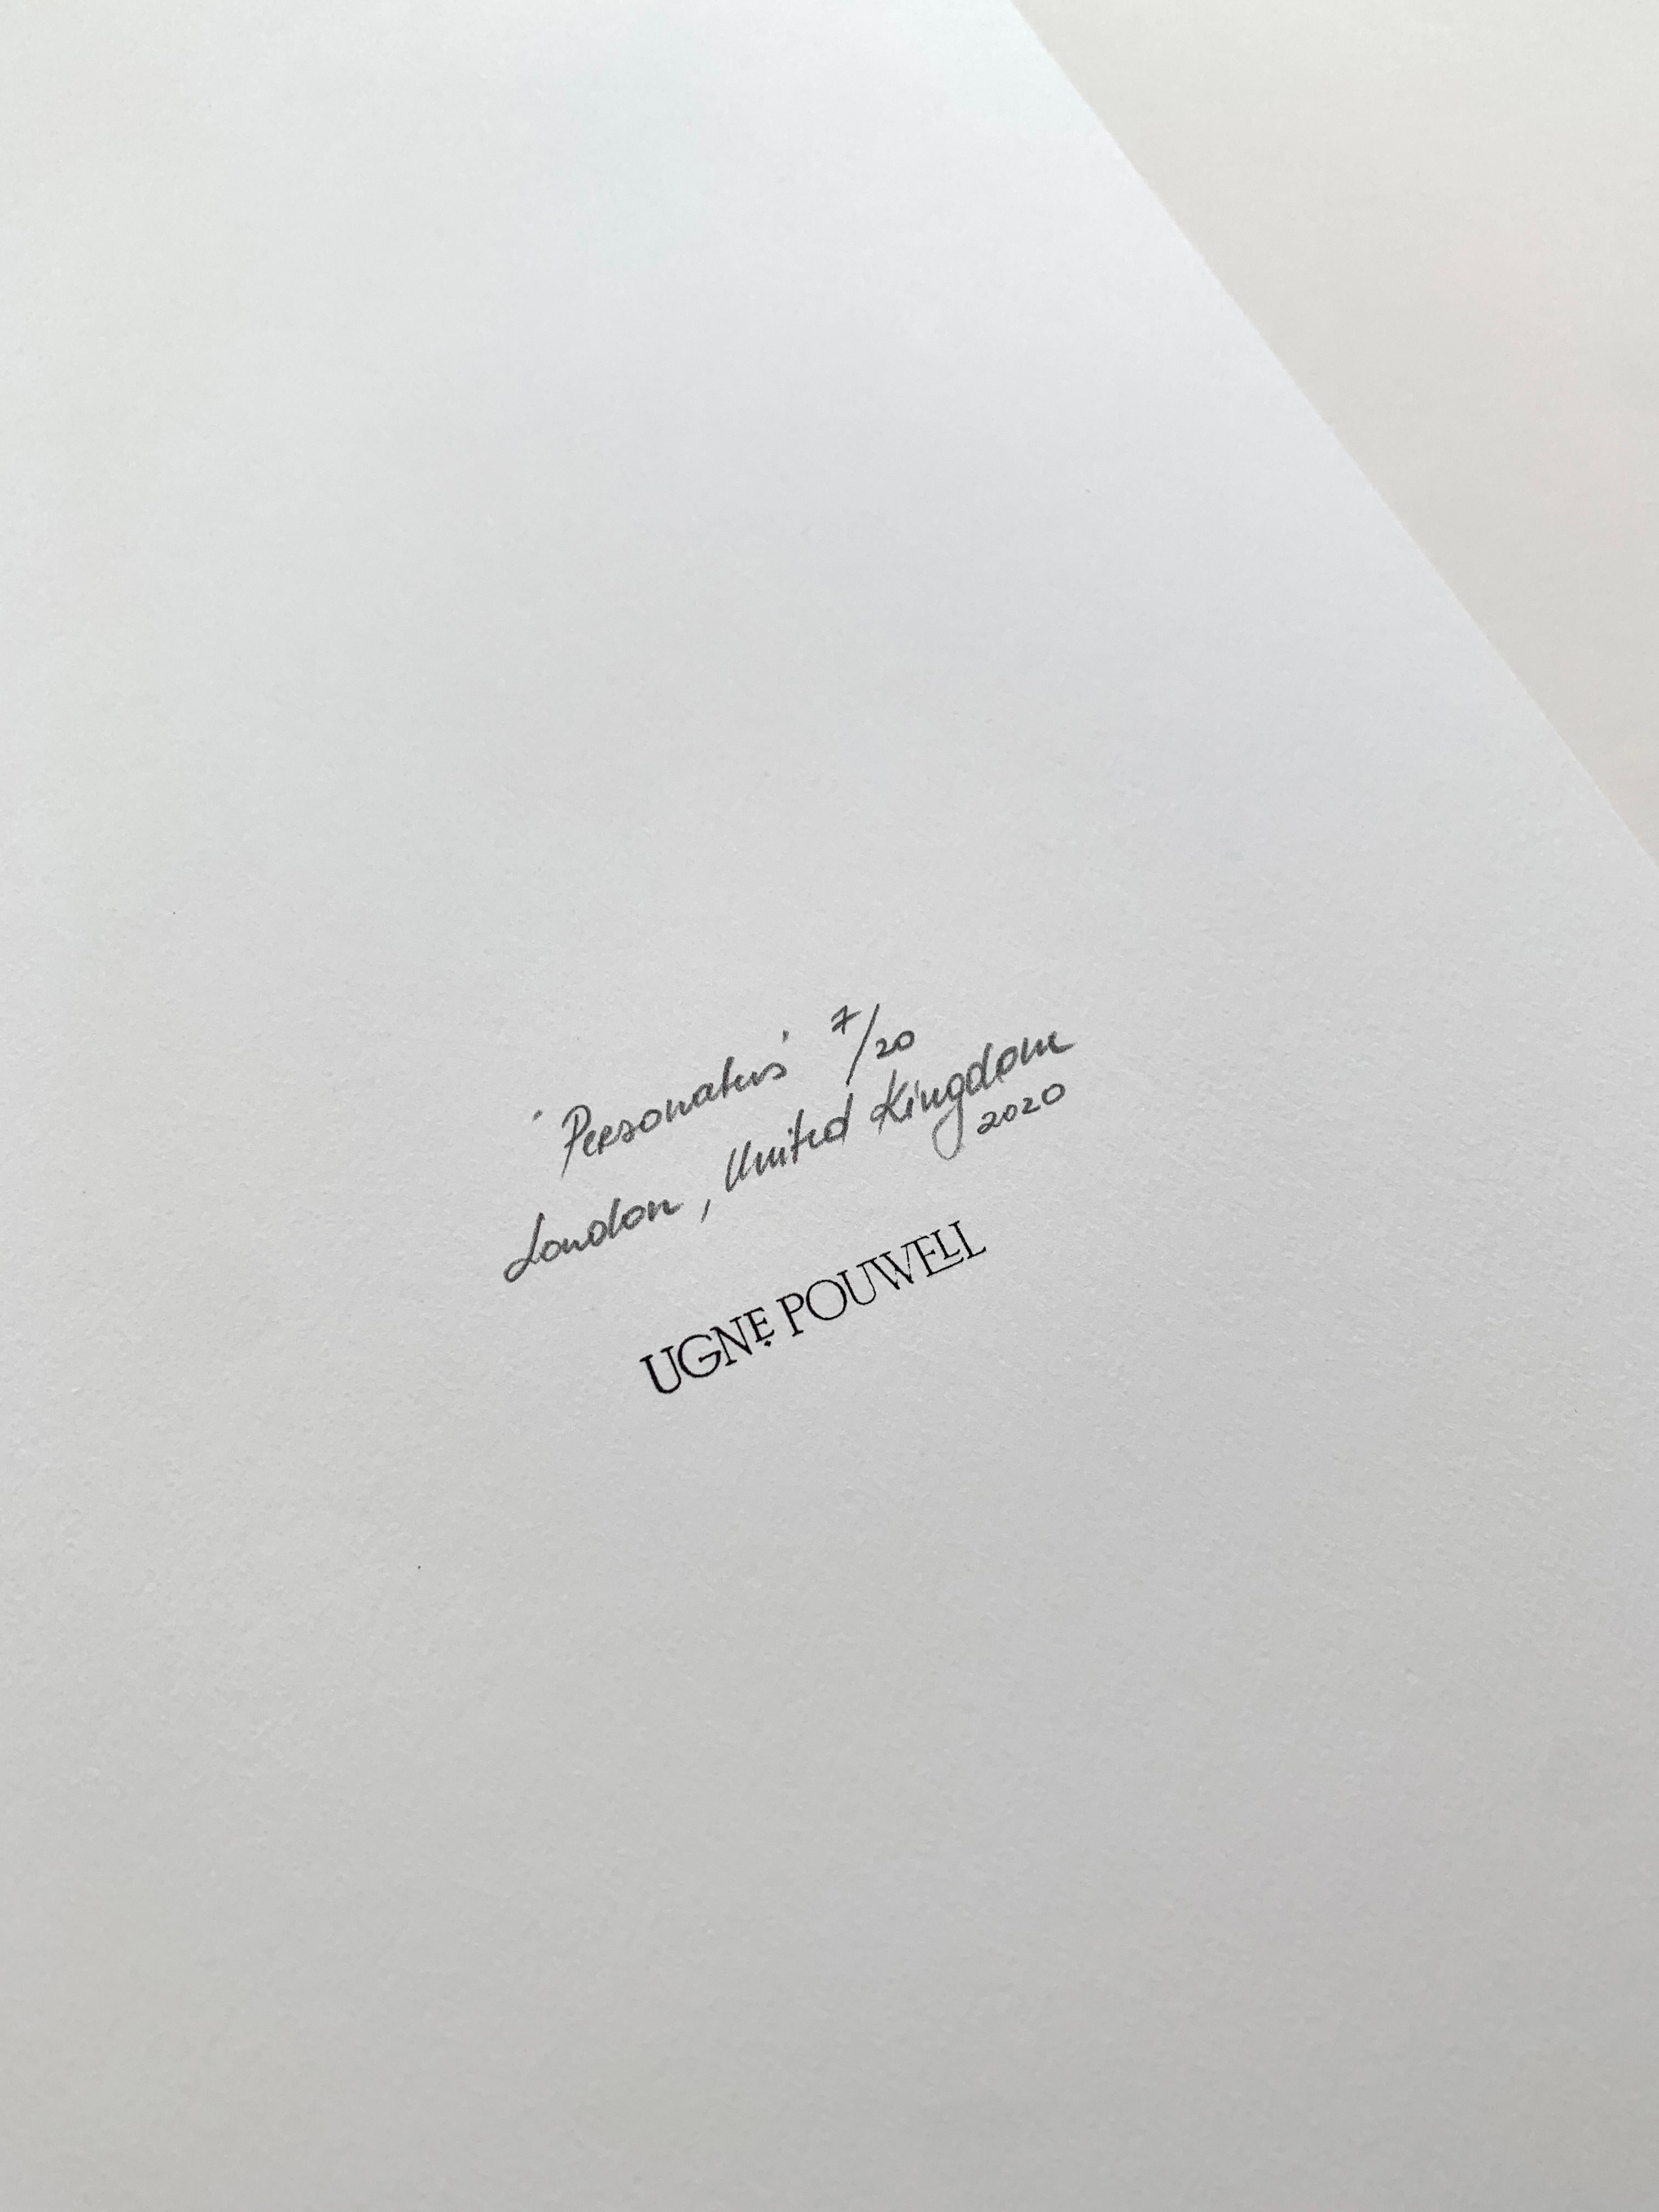 'Personatus'

London, Vereinigtes Königreich 2020.
Limitierte Auflage von 20 Stück.

Die Fotografie ist auf schwerem Kunstdruckpapier gedruckt.

Inklusive COA.

Personatus